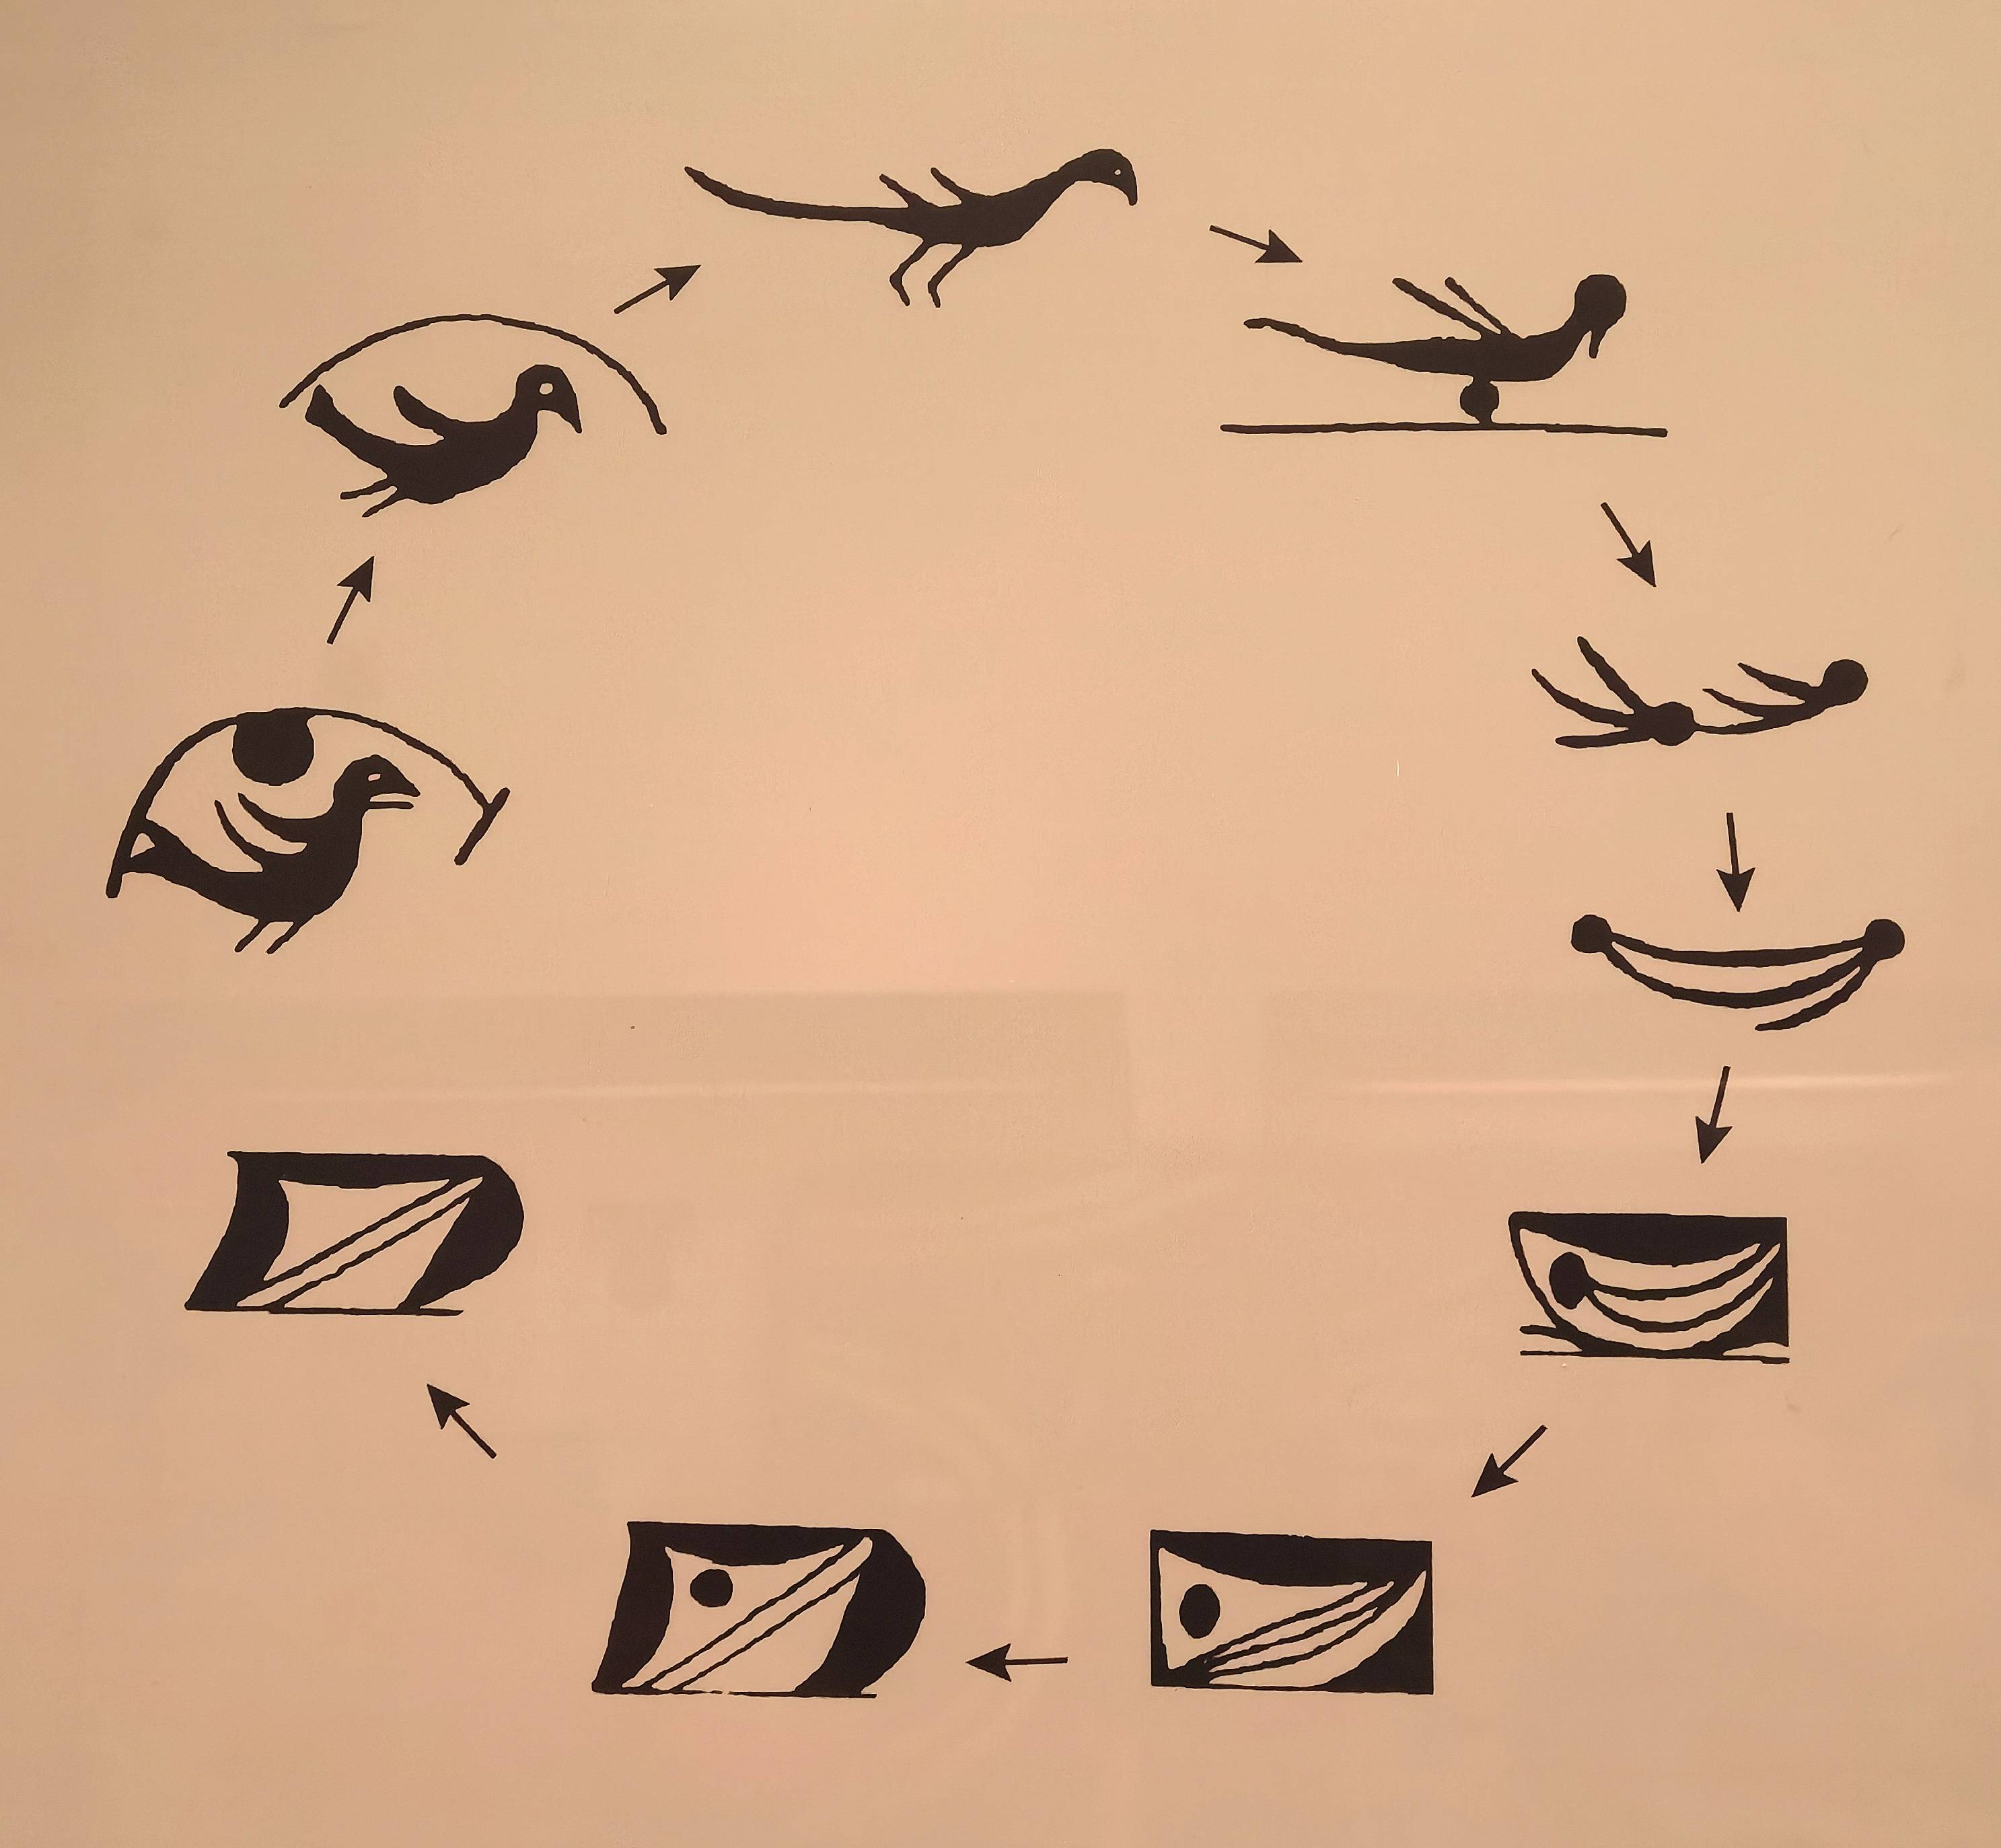 仰韶文化彩陶鱼纹演变示意图杨晓君摄除了艺术上的感染力以外,水鸟衔